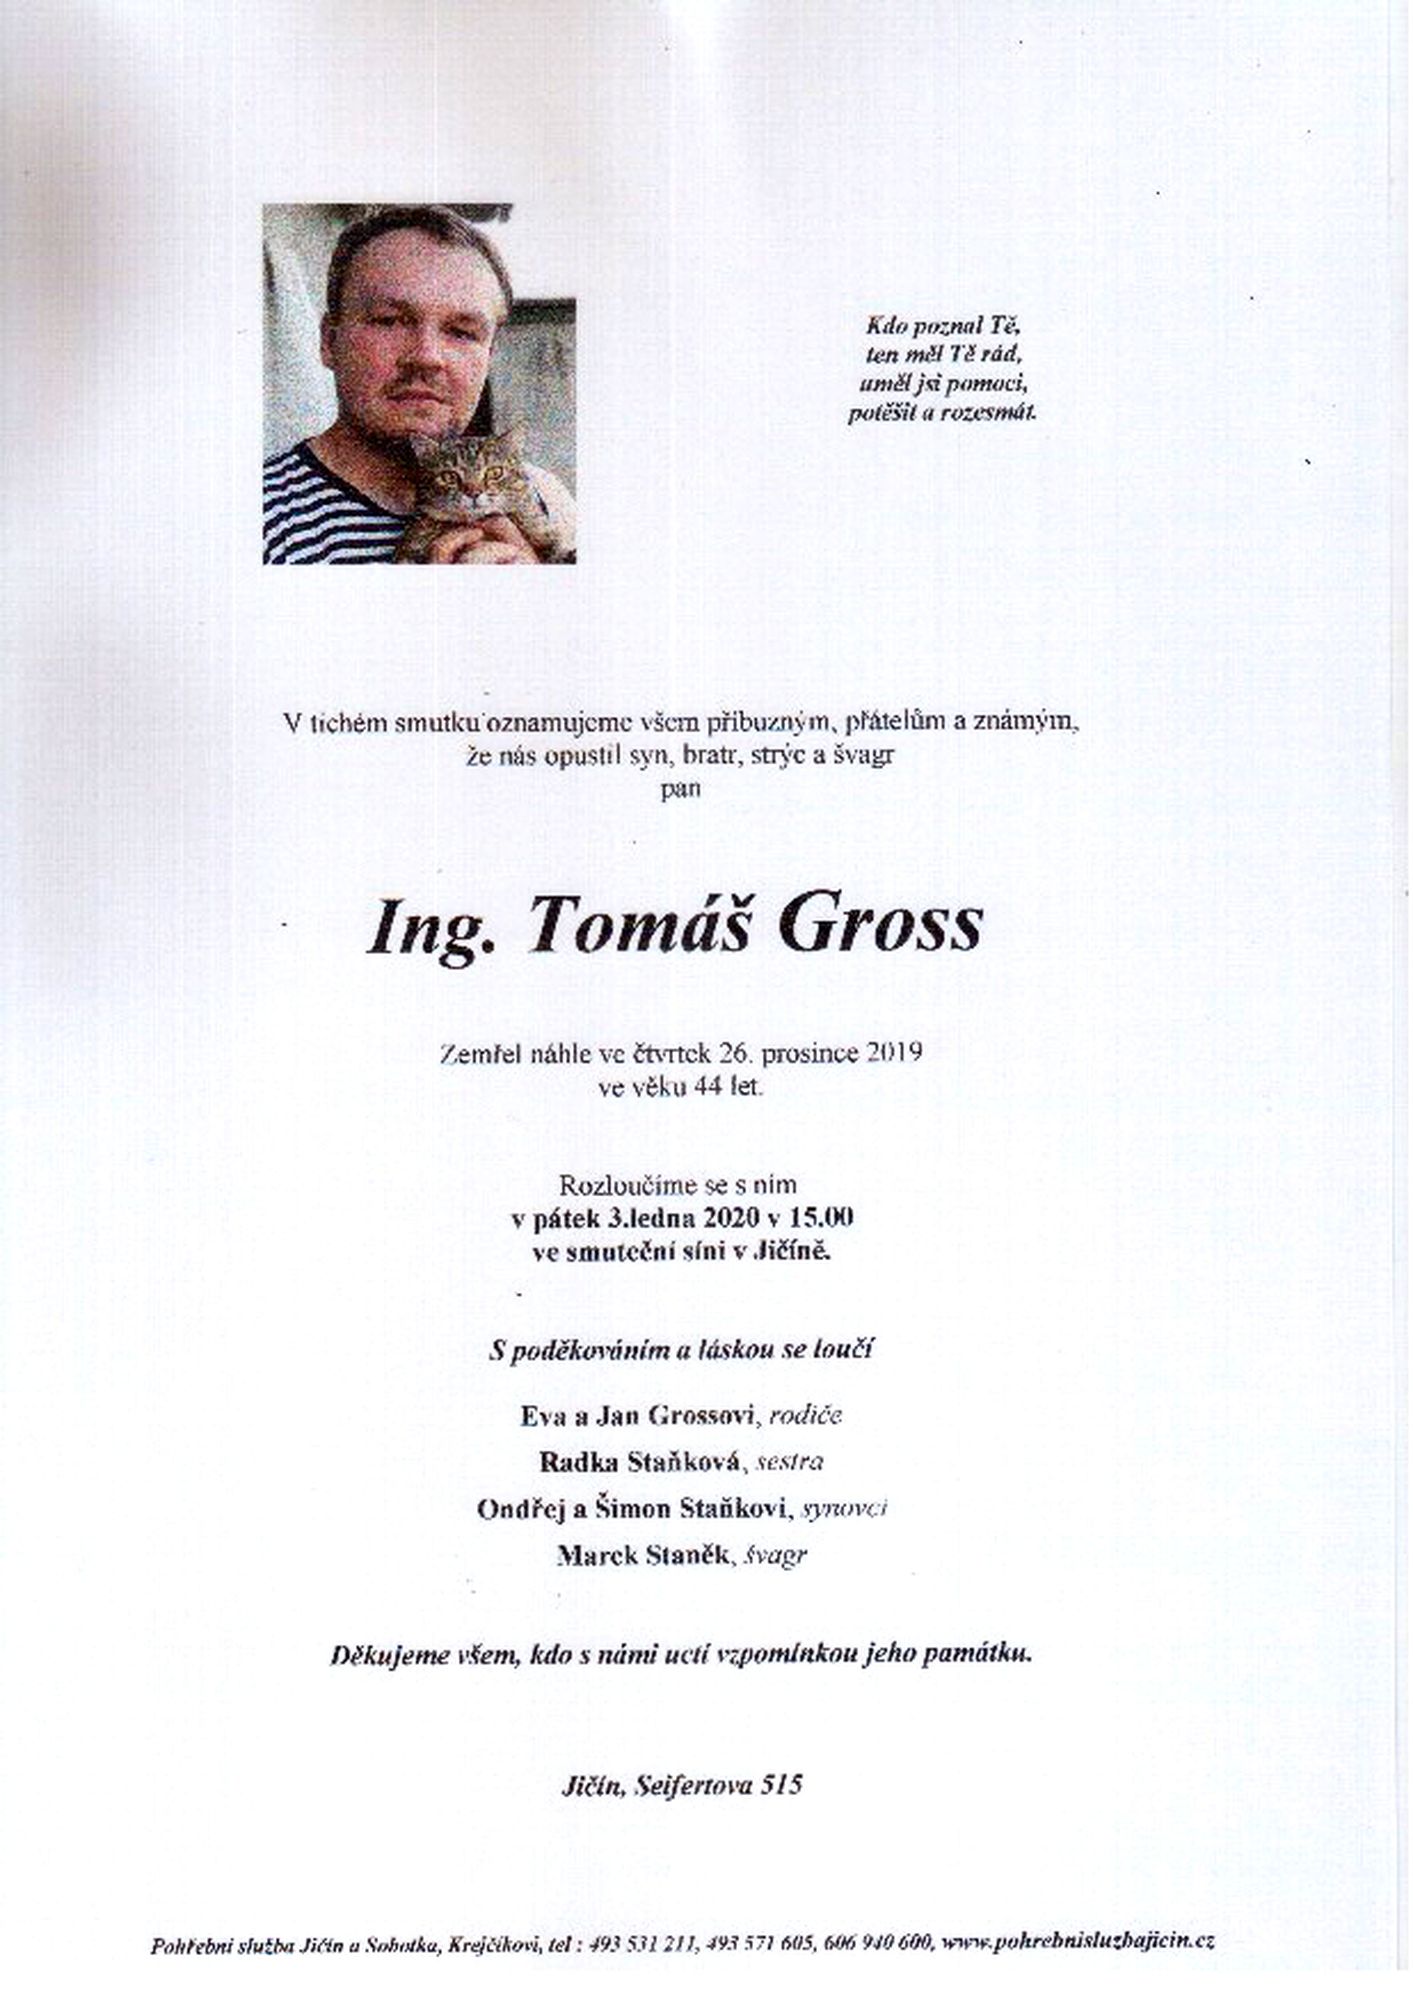 Ing. Tomáš Gross